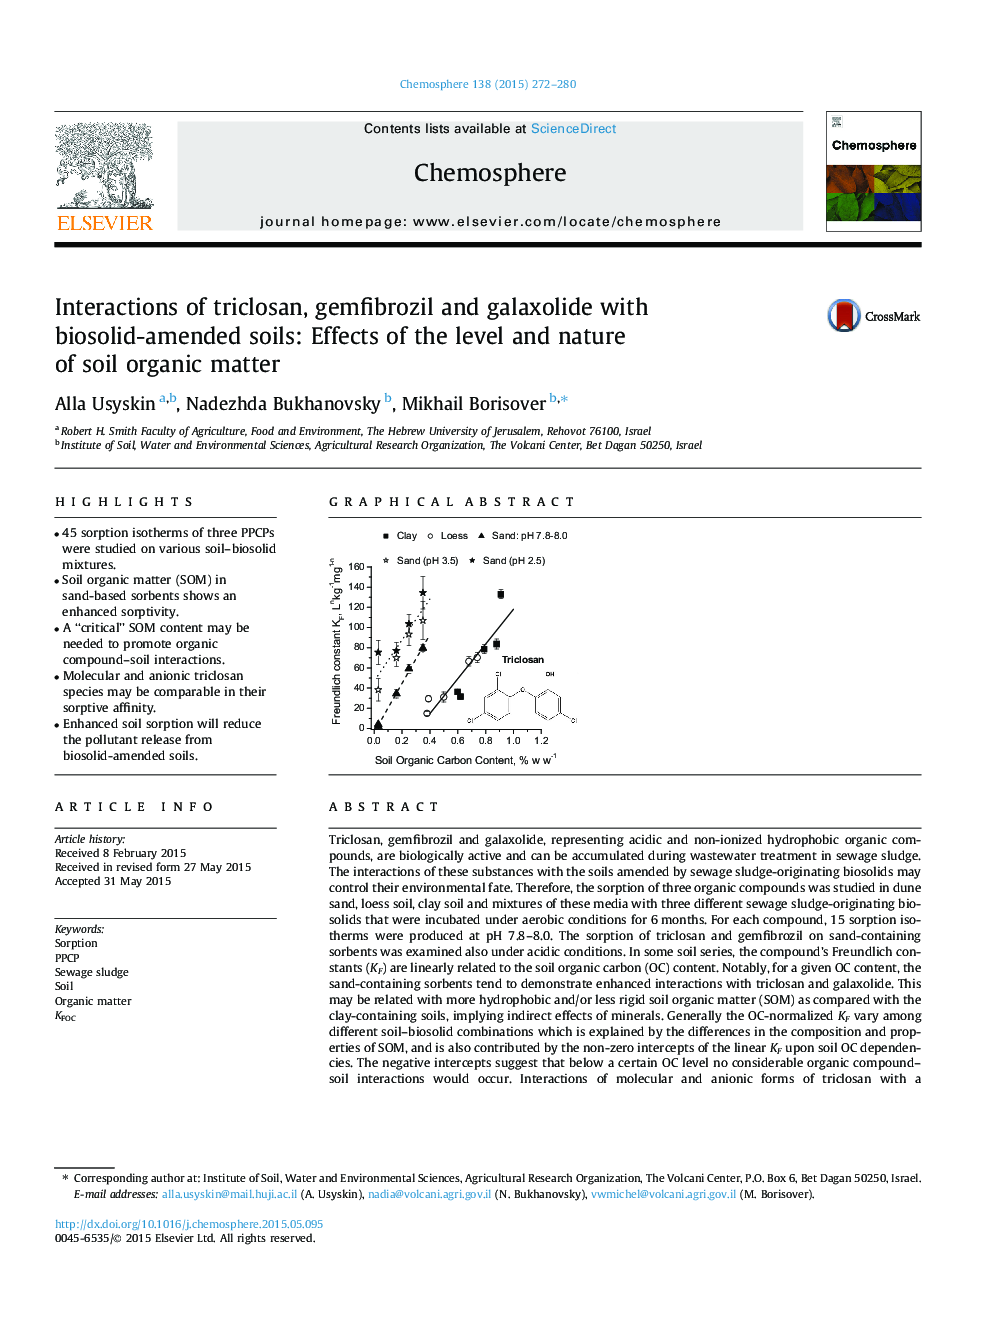 تعامل تری کلوزان، ژمفیبروزیل و گالاکسولید با خاک های اصلاح شده بوسیولید: اثرات سطح و ماهیت مواد آلی خاک 